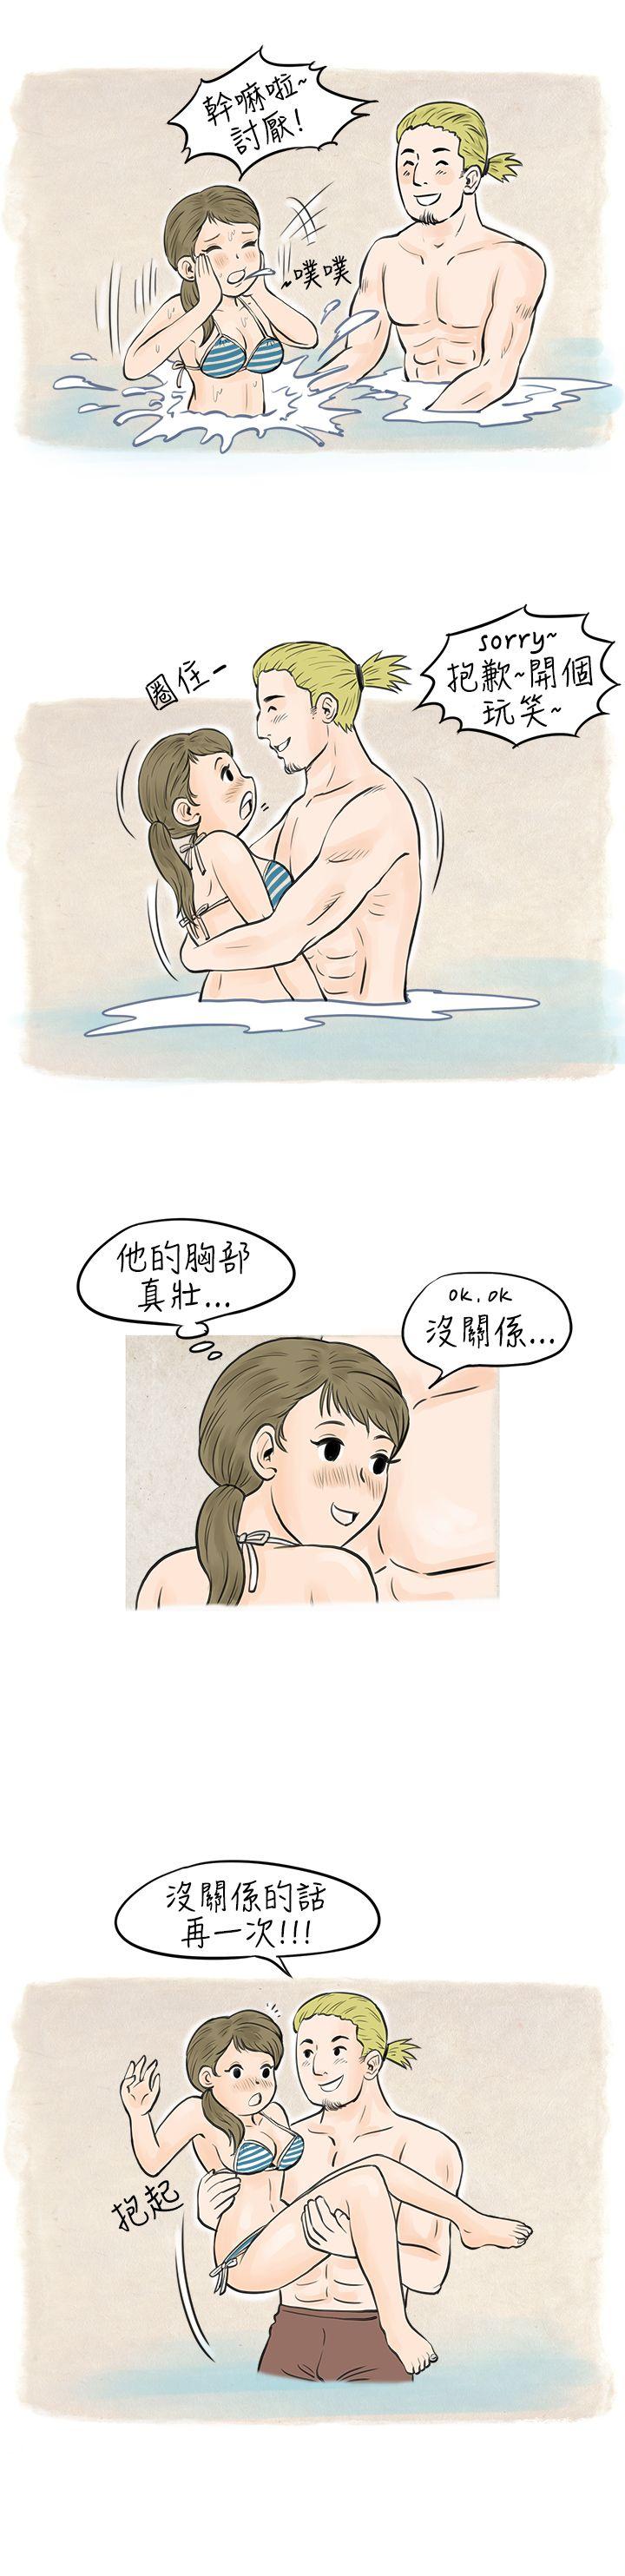 韩国污漫画 秘密Story 在梨泰院游泳池中的小故事(下) 3